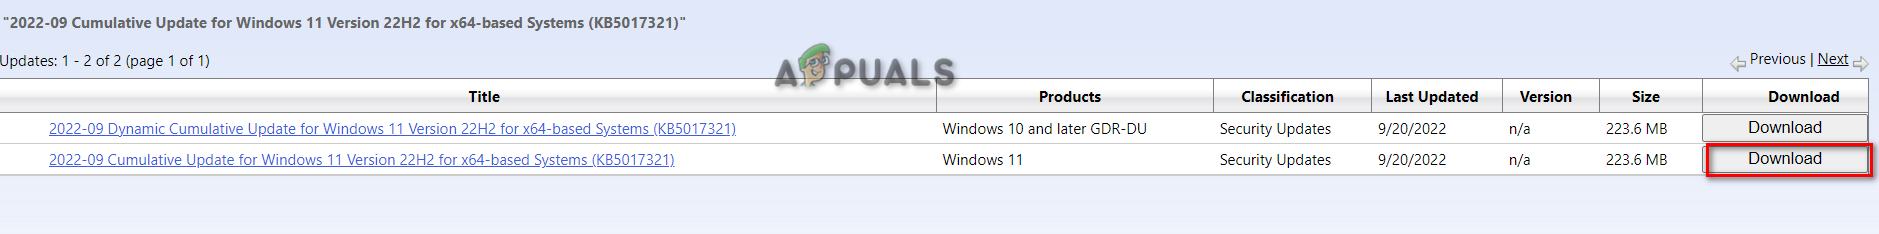 Descargando el último parche de actualización de Windows